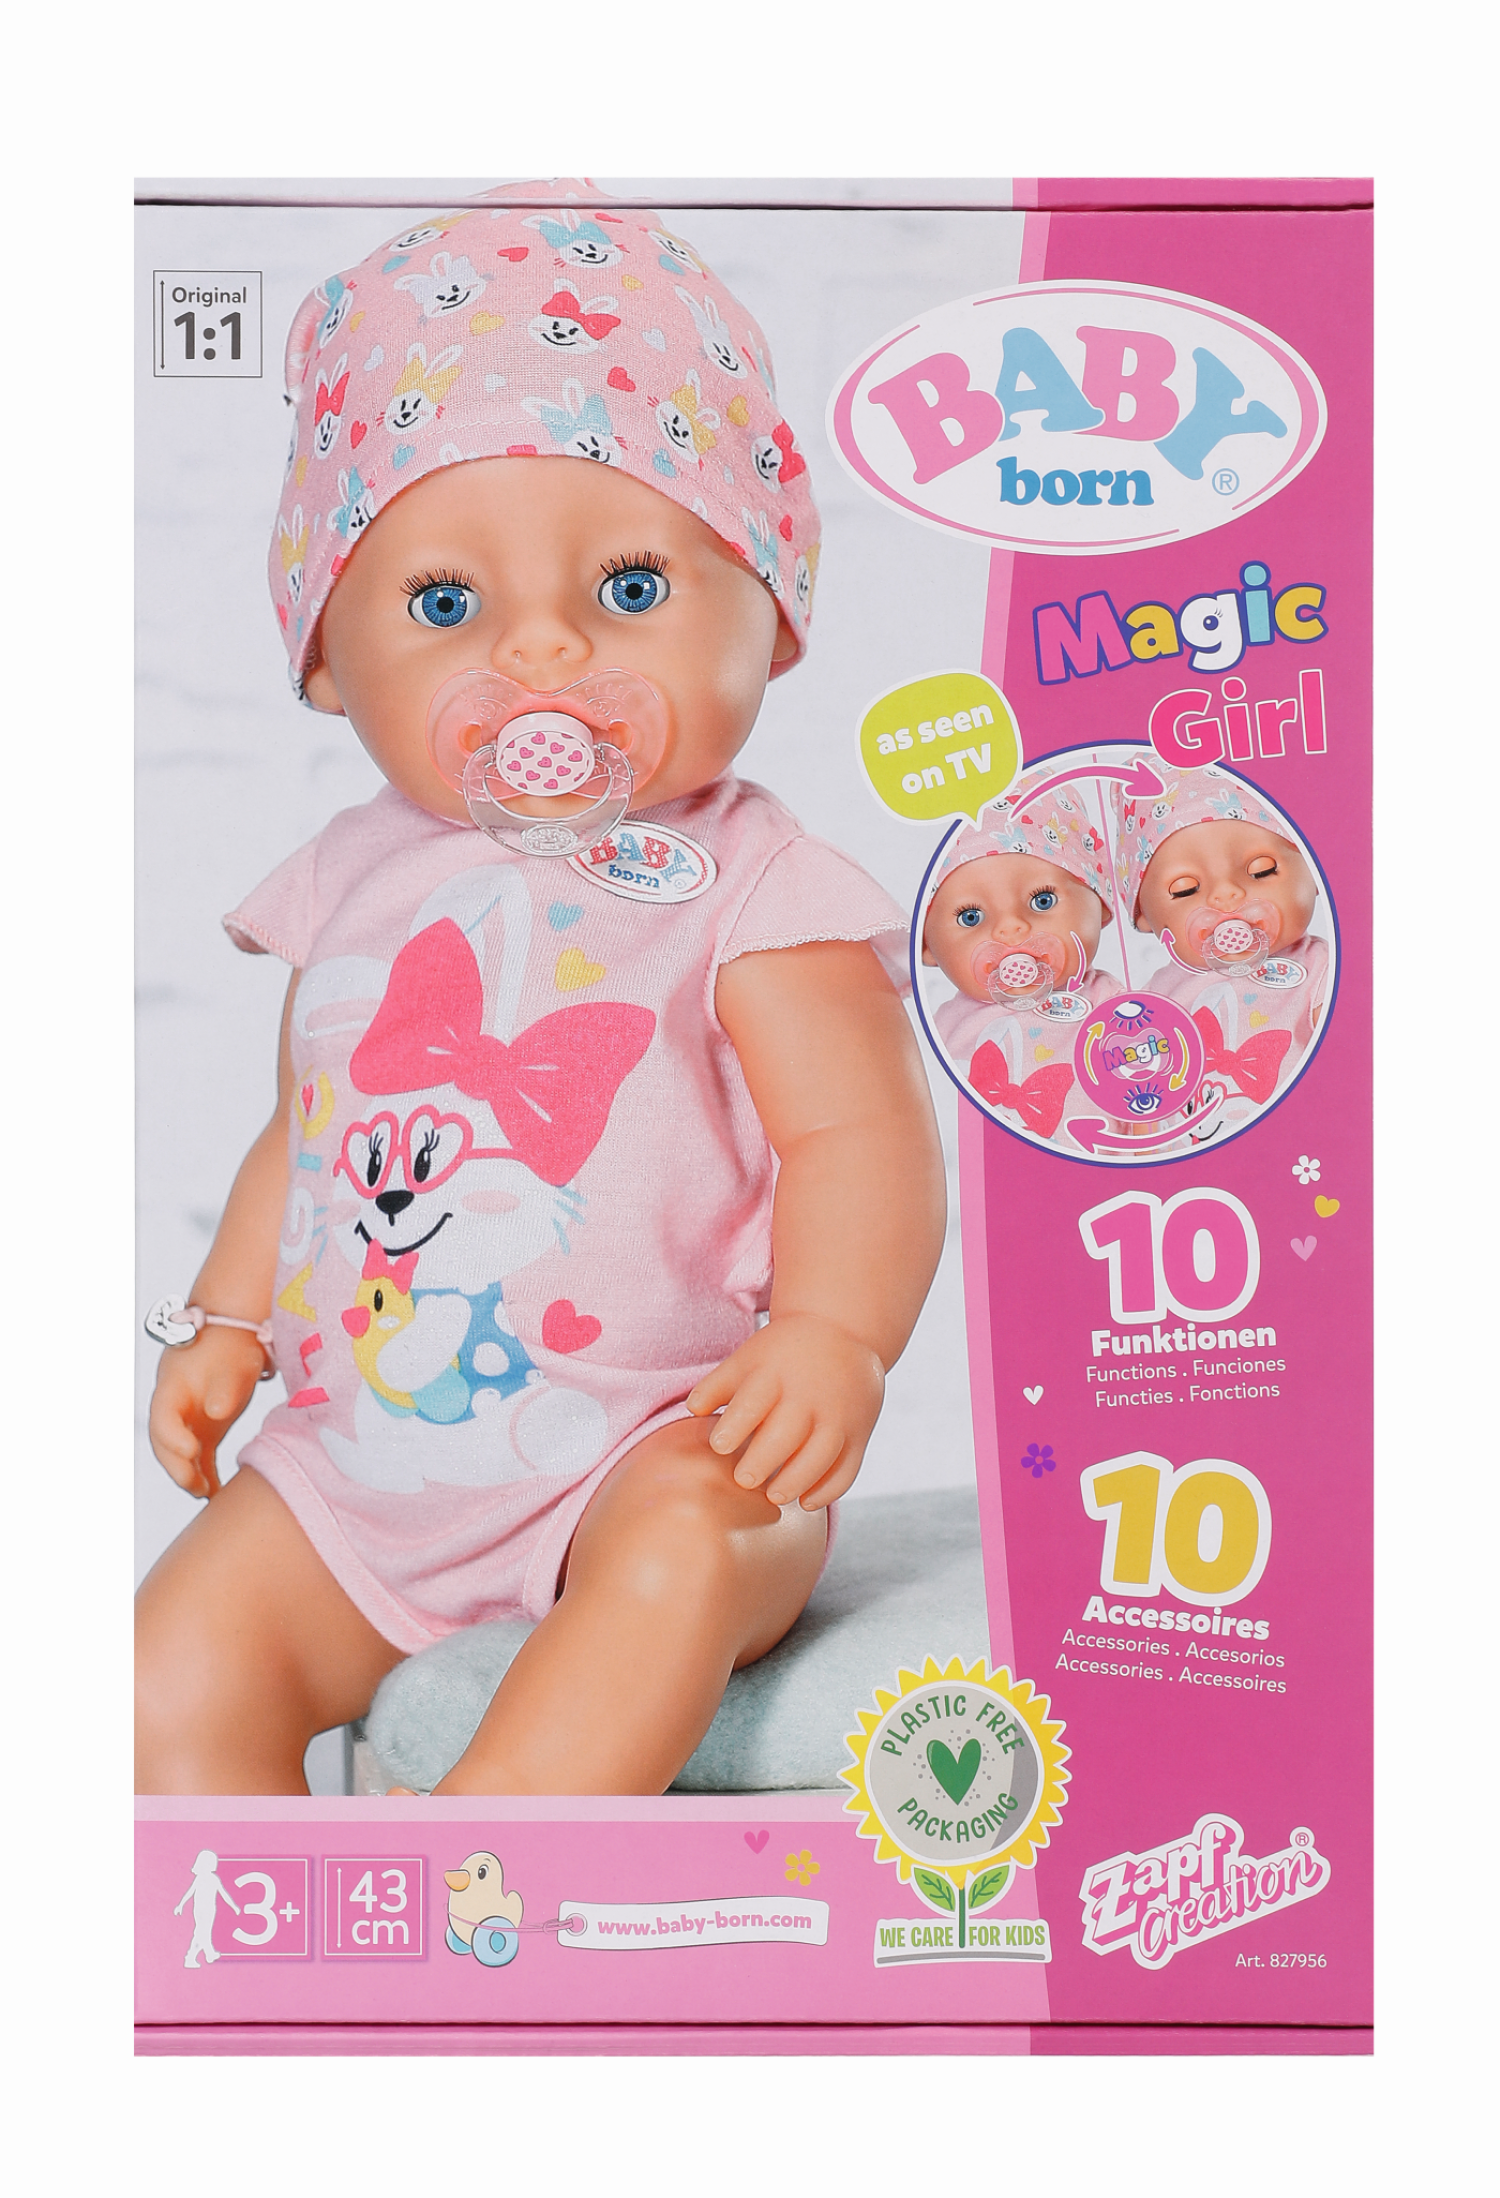 Baby born bambola da 43cm morbida al tatto con ciuccio magico - bambola con funzioni realistiche - morbida & snodabile - mangia, dorme, piange & fa pipì sul vasino - 10 accessori - rosa - 